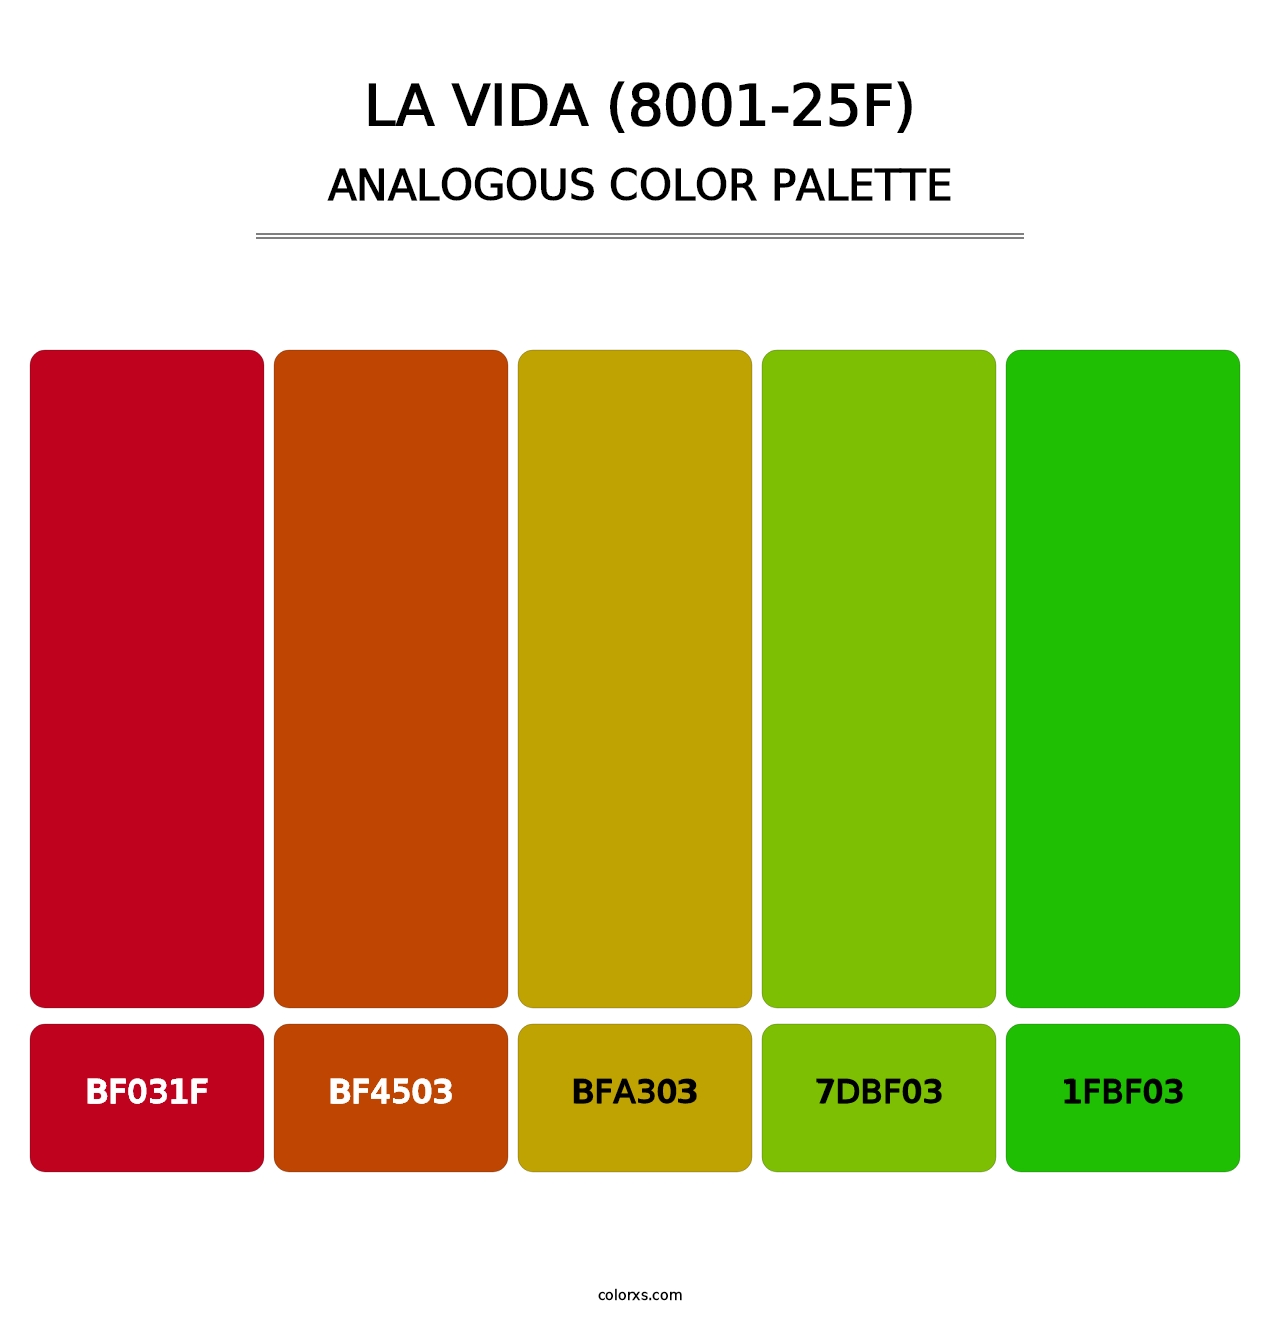 La Vida (8001-25F) - Analogous Color Palette